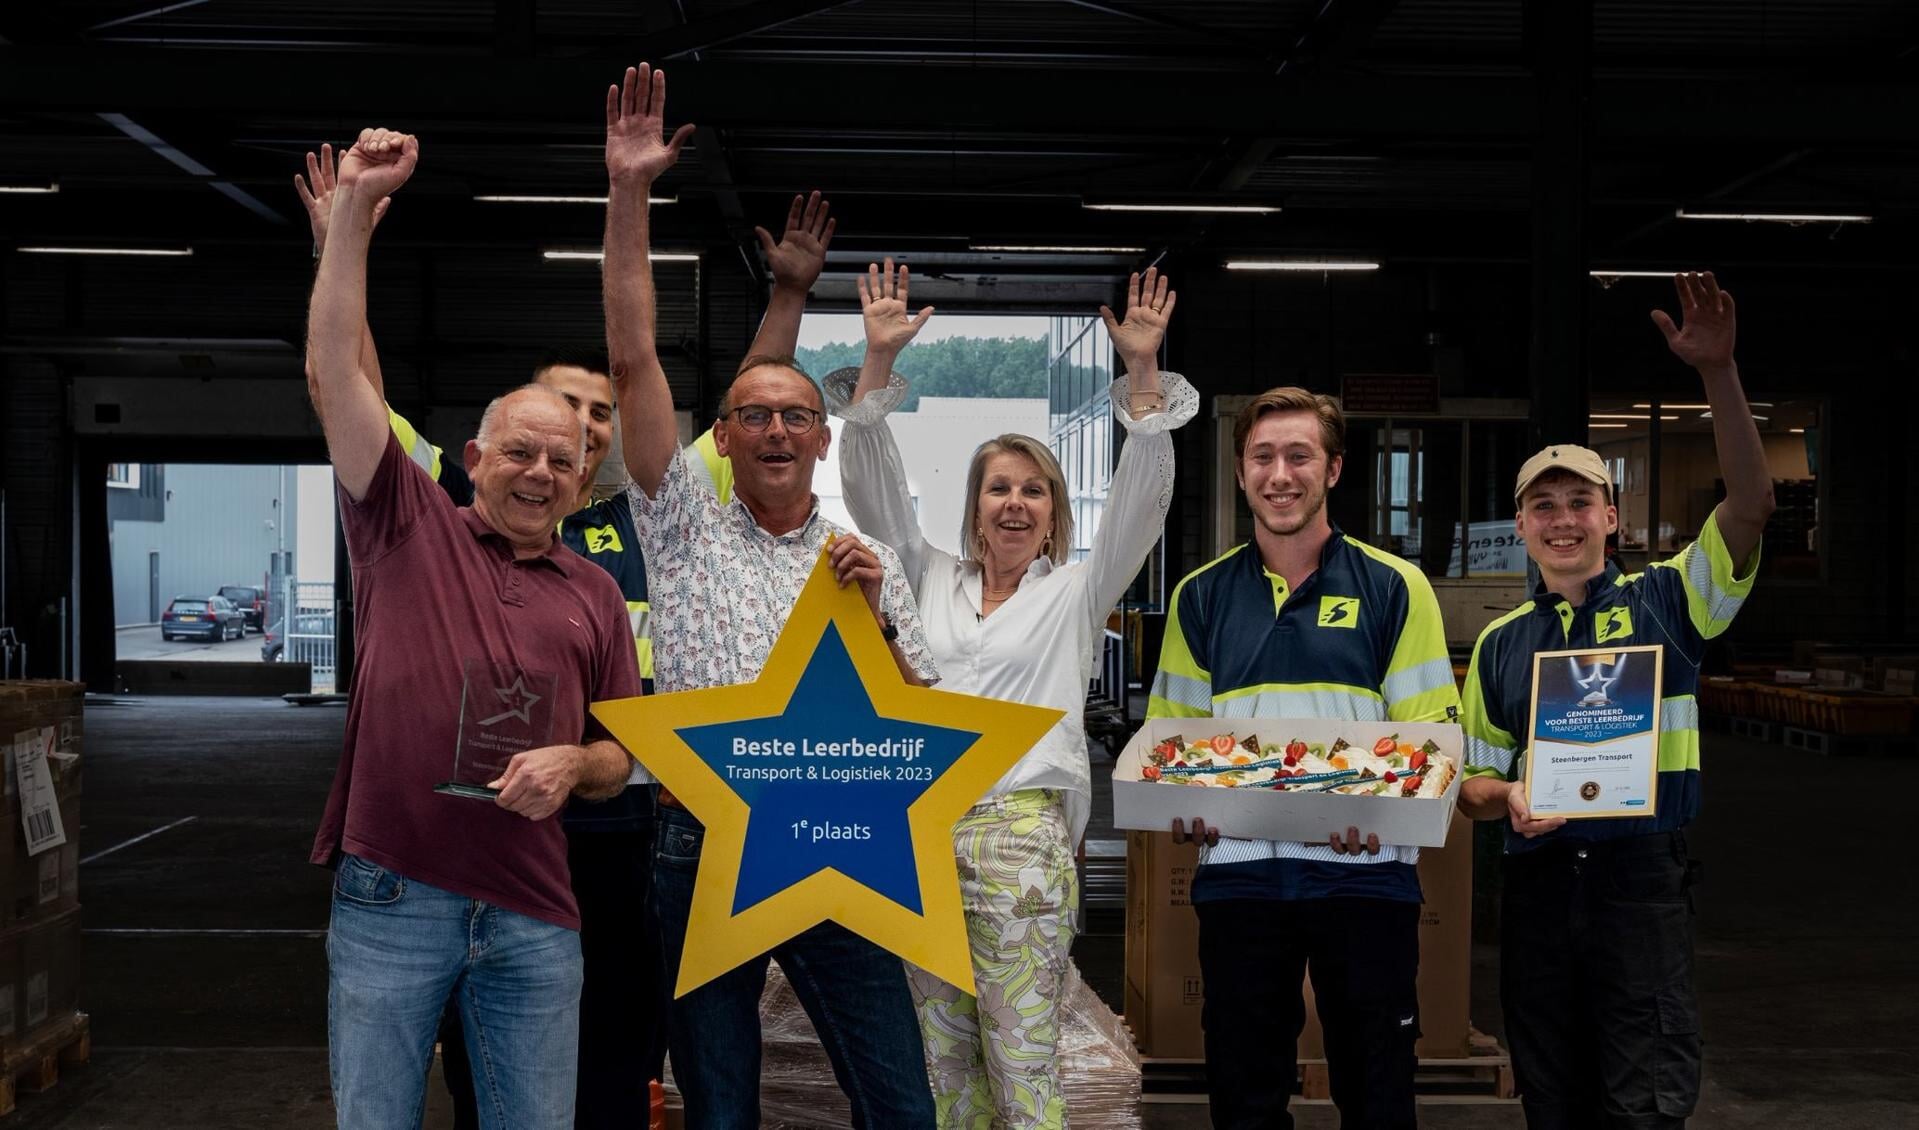 Steenbergen Transport wint prijs voor beste leerbedrijf. Beeld: Steenbergen Transport